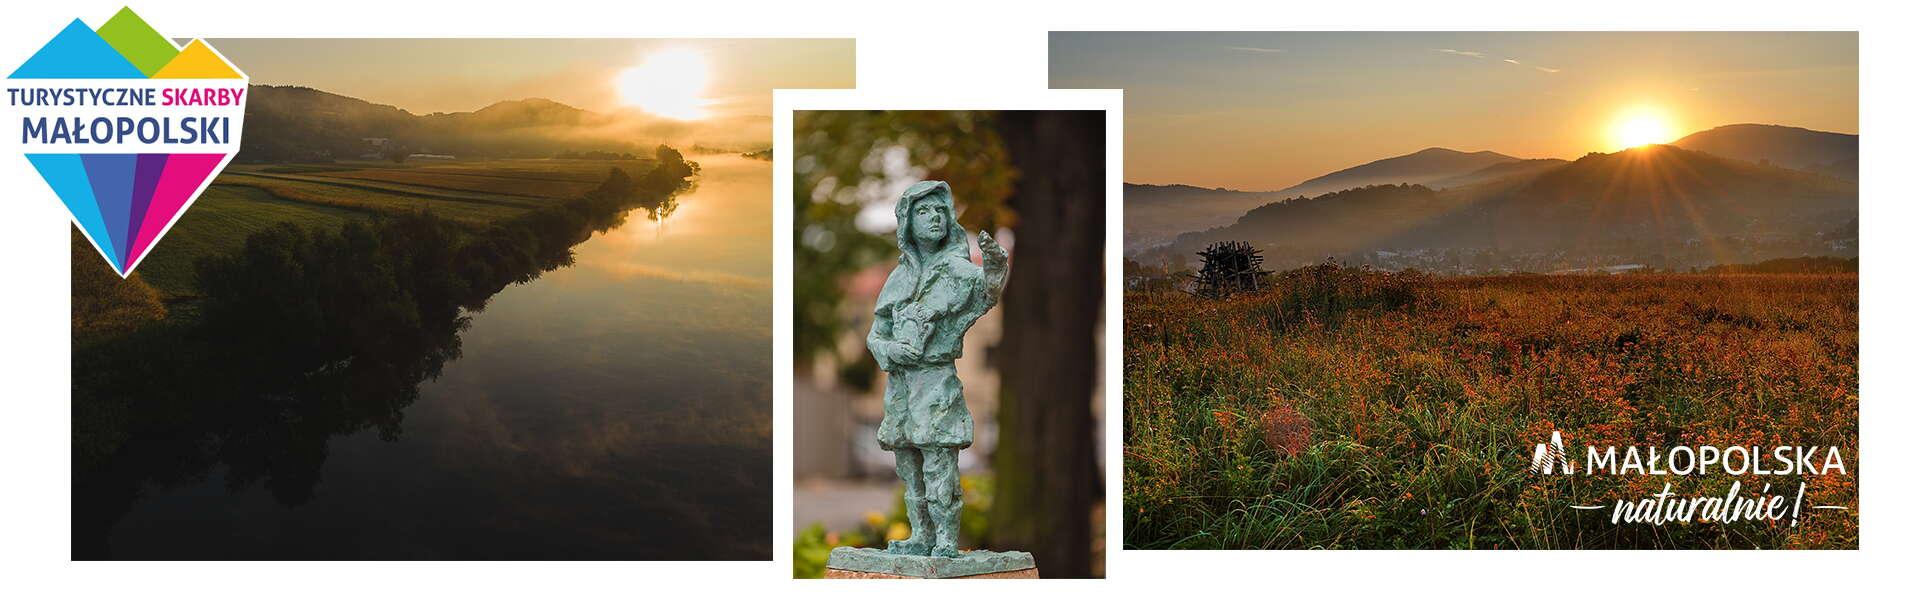 Kolaż trzech zdjęć: zdjęcie rzeźby olkuskiego gwarka, zdjęcie wschodu słońca nad rzeką, zdjęcie na którym słońce zachodzi za górę. W prawym dolnym rogu logo - napis Małopolska naturalnie, w lewym górnym rogu - logo Turystycznych Skarbów Małopolski